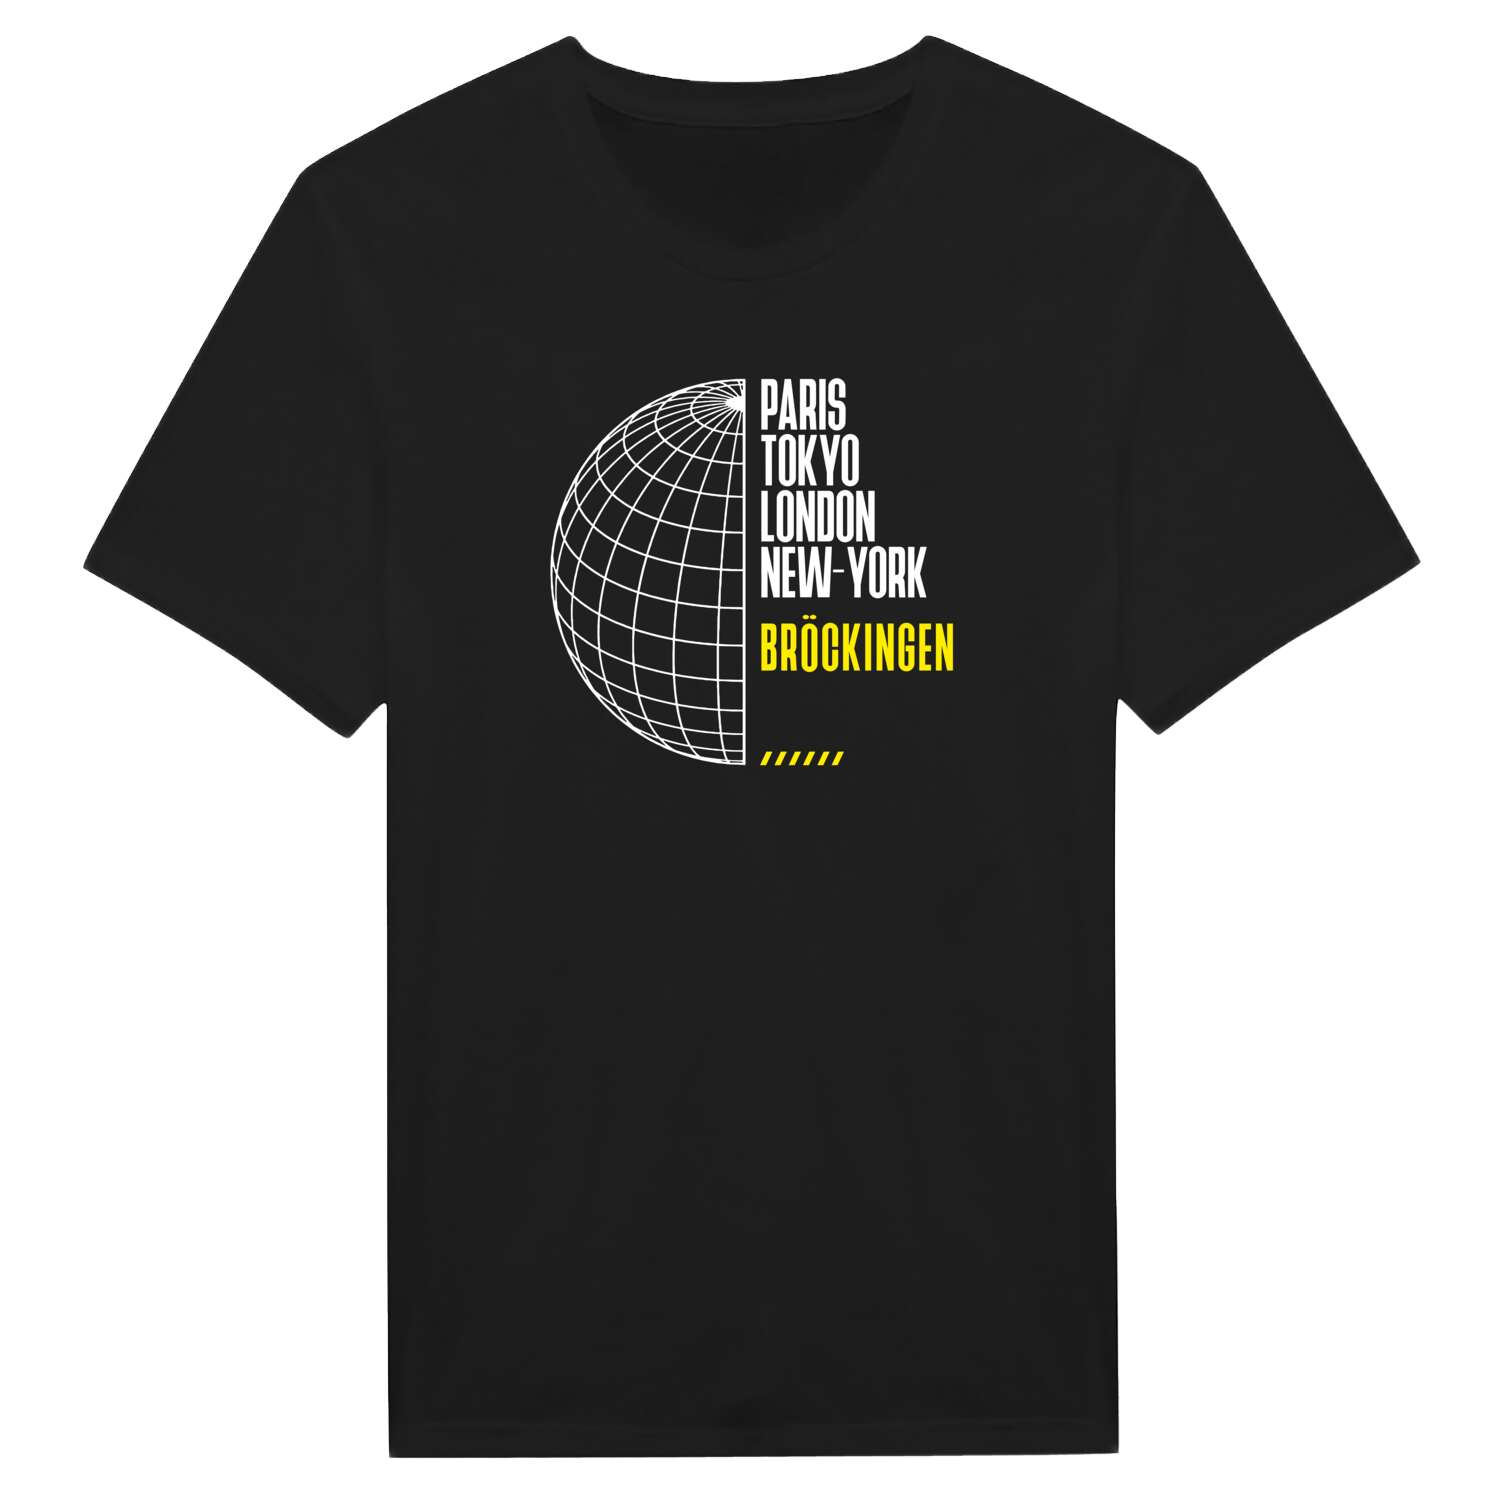 Bröckingen T-Shirt »Paris Tokyo London«